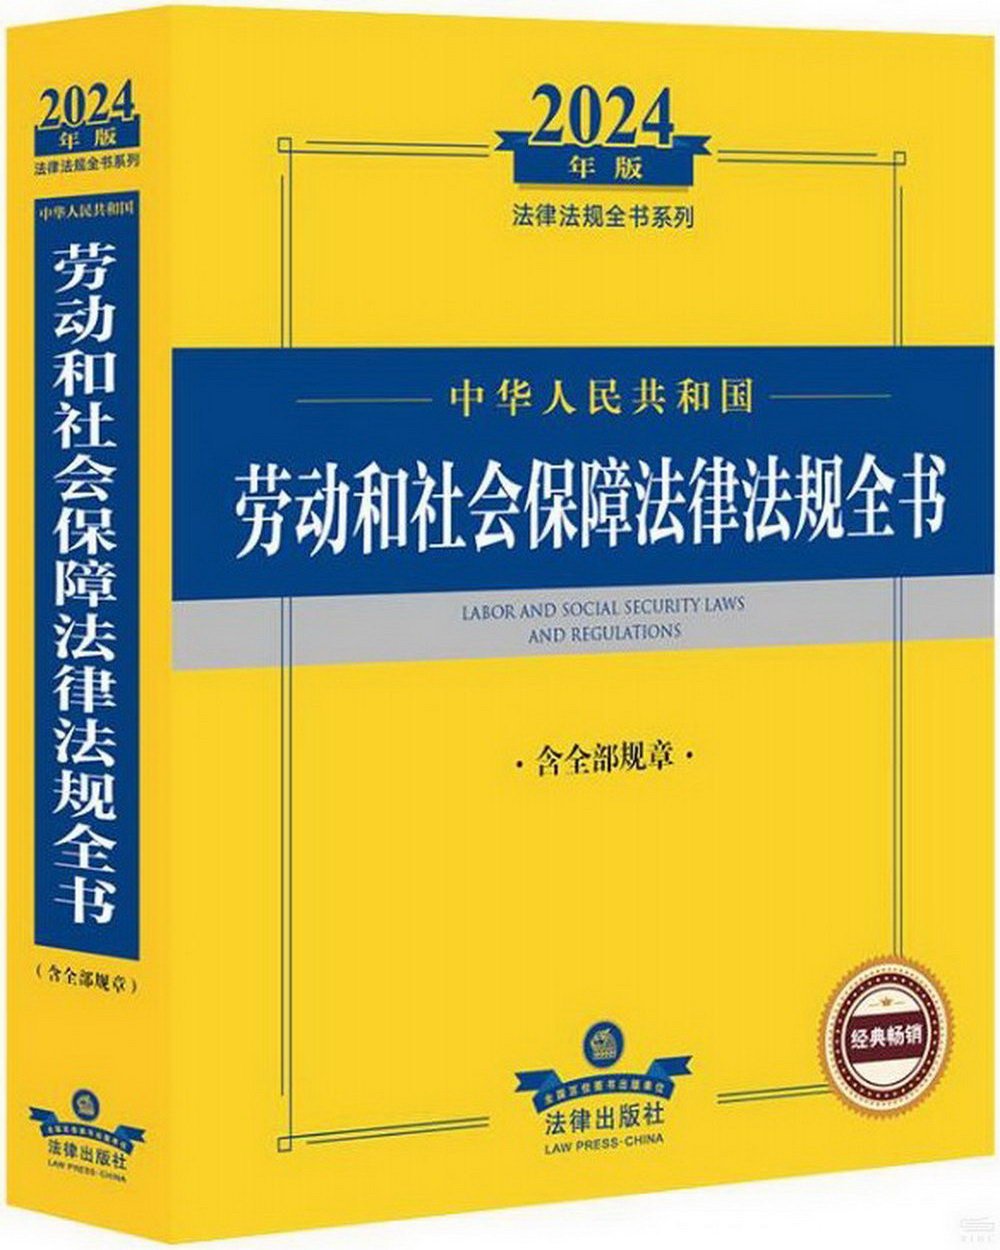 2024年版法律法規全書系列：中華人民共和國勞動和社會保障法律法規全書（含全部規章）